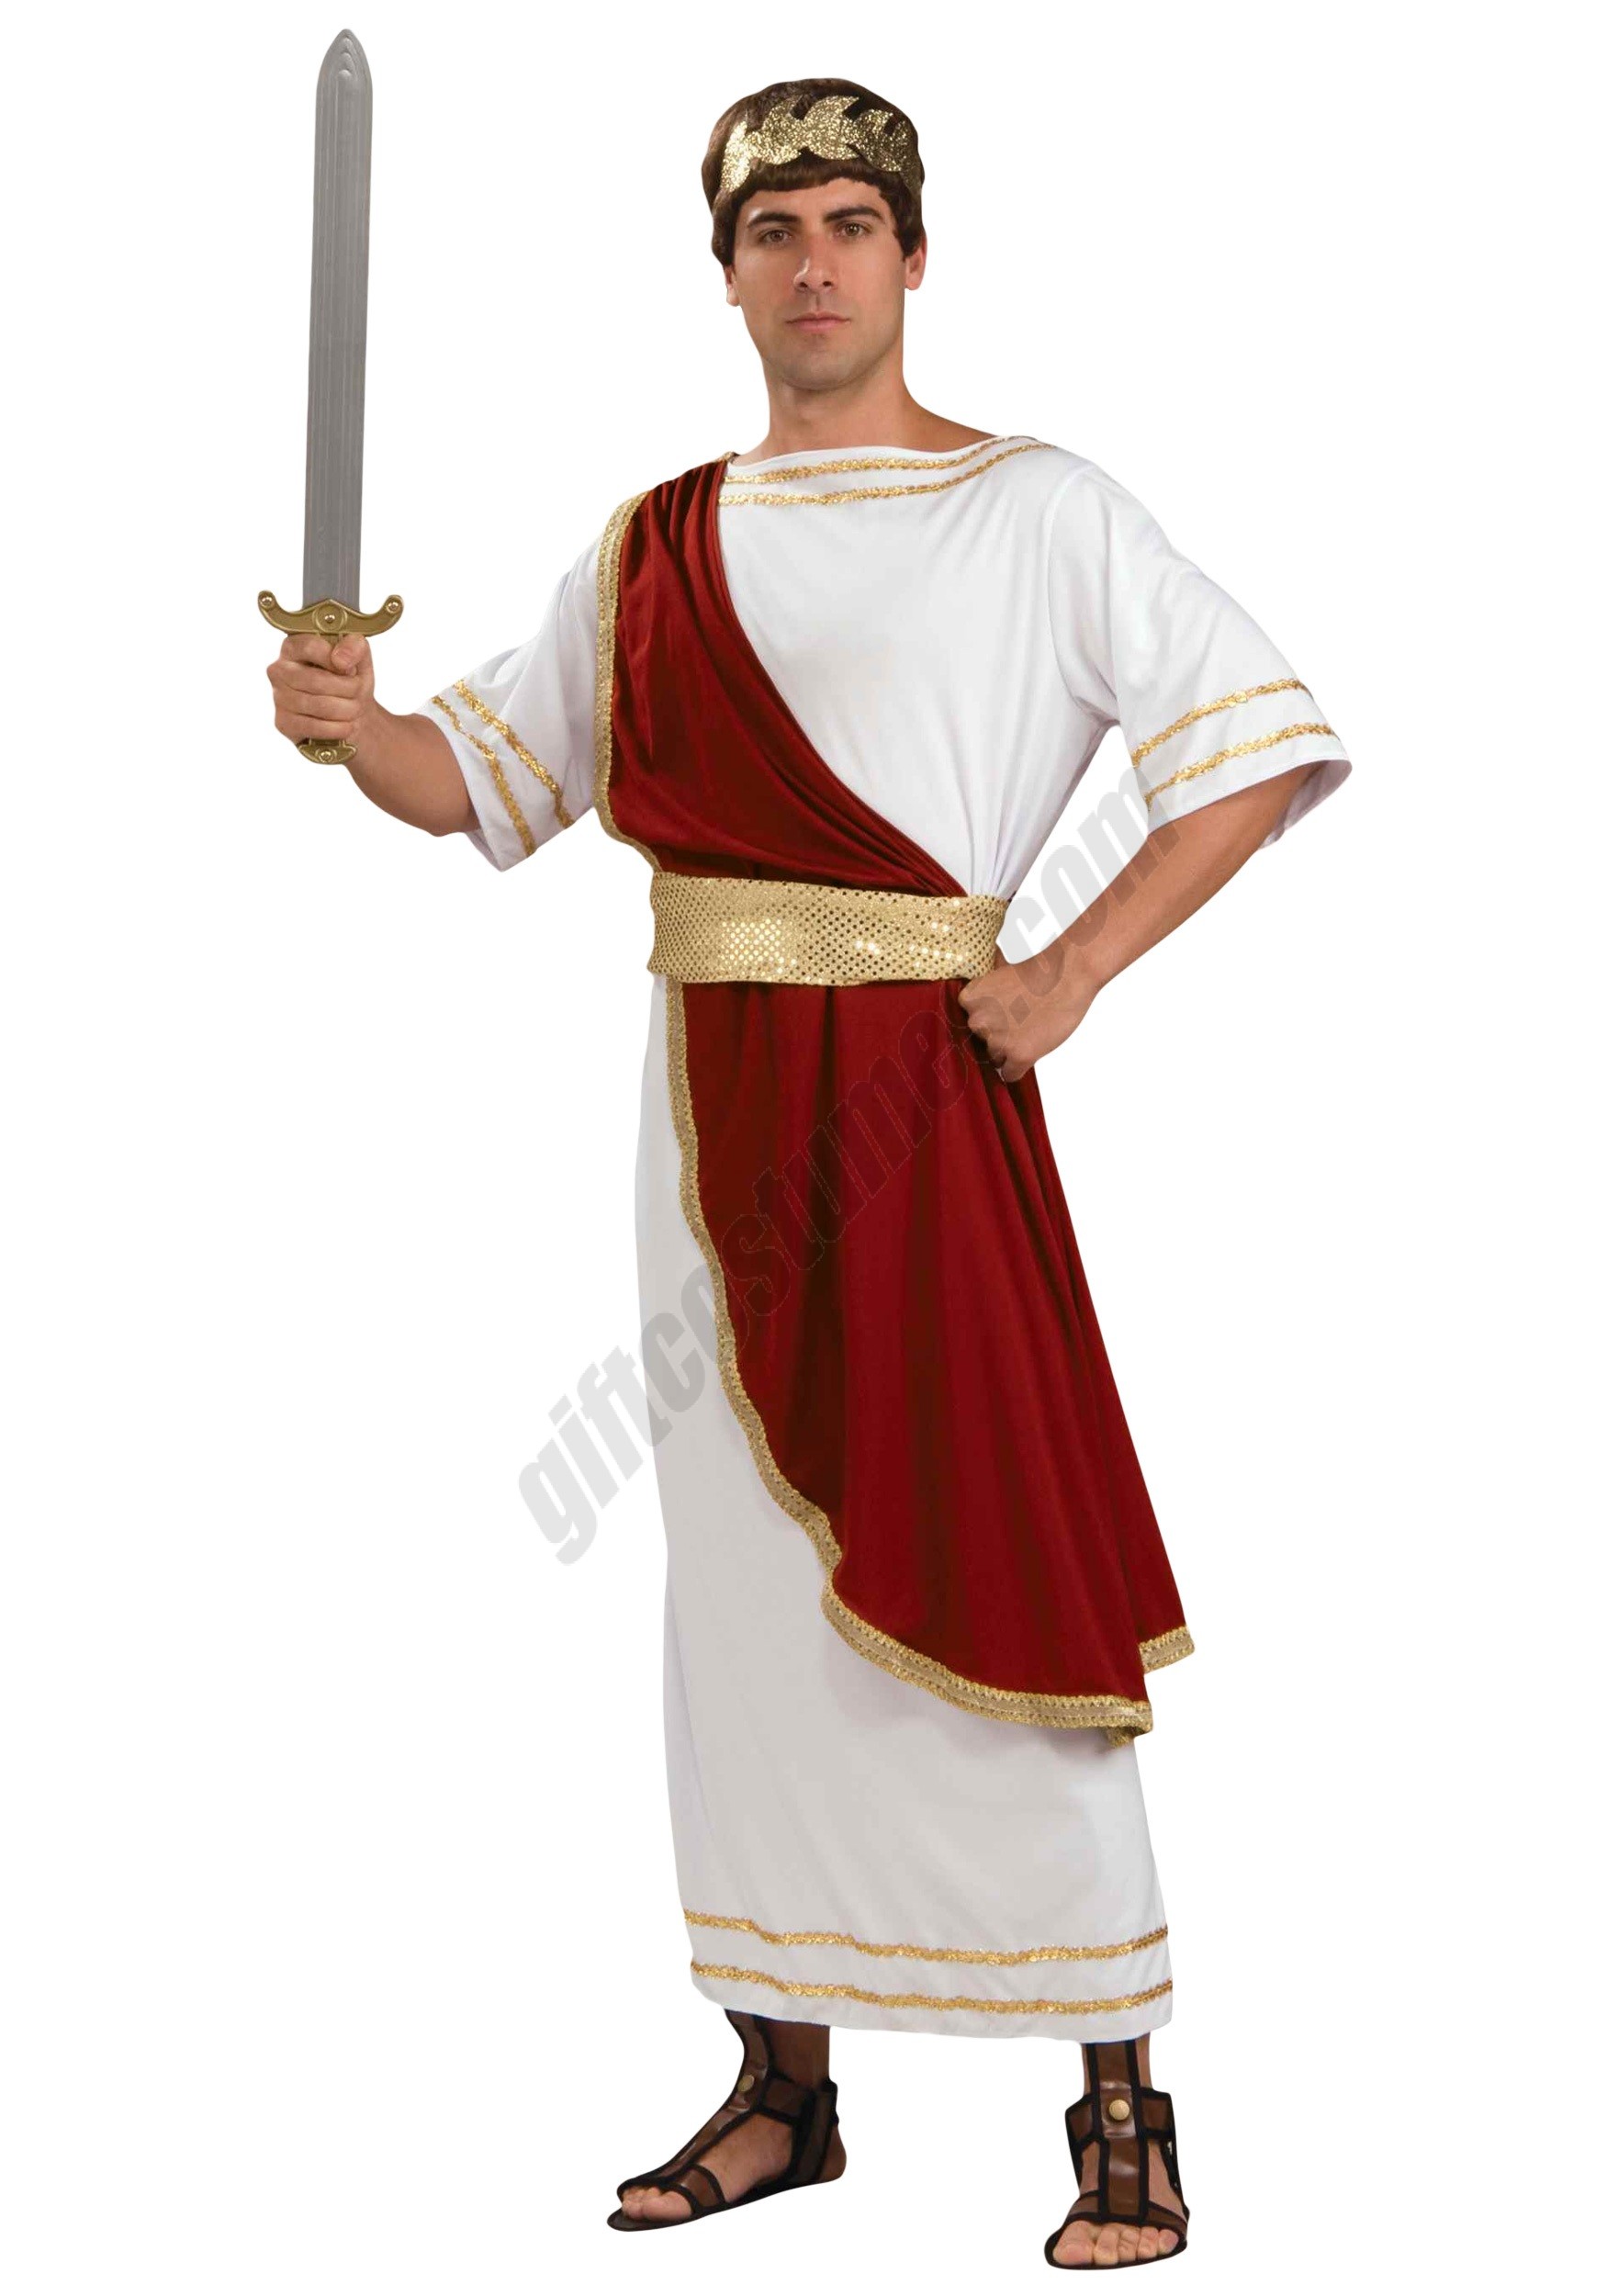 Adult Caesar Costume Promotions - Adult Caesar Costume Promotions